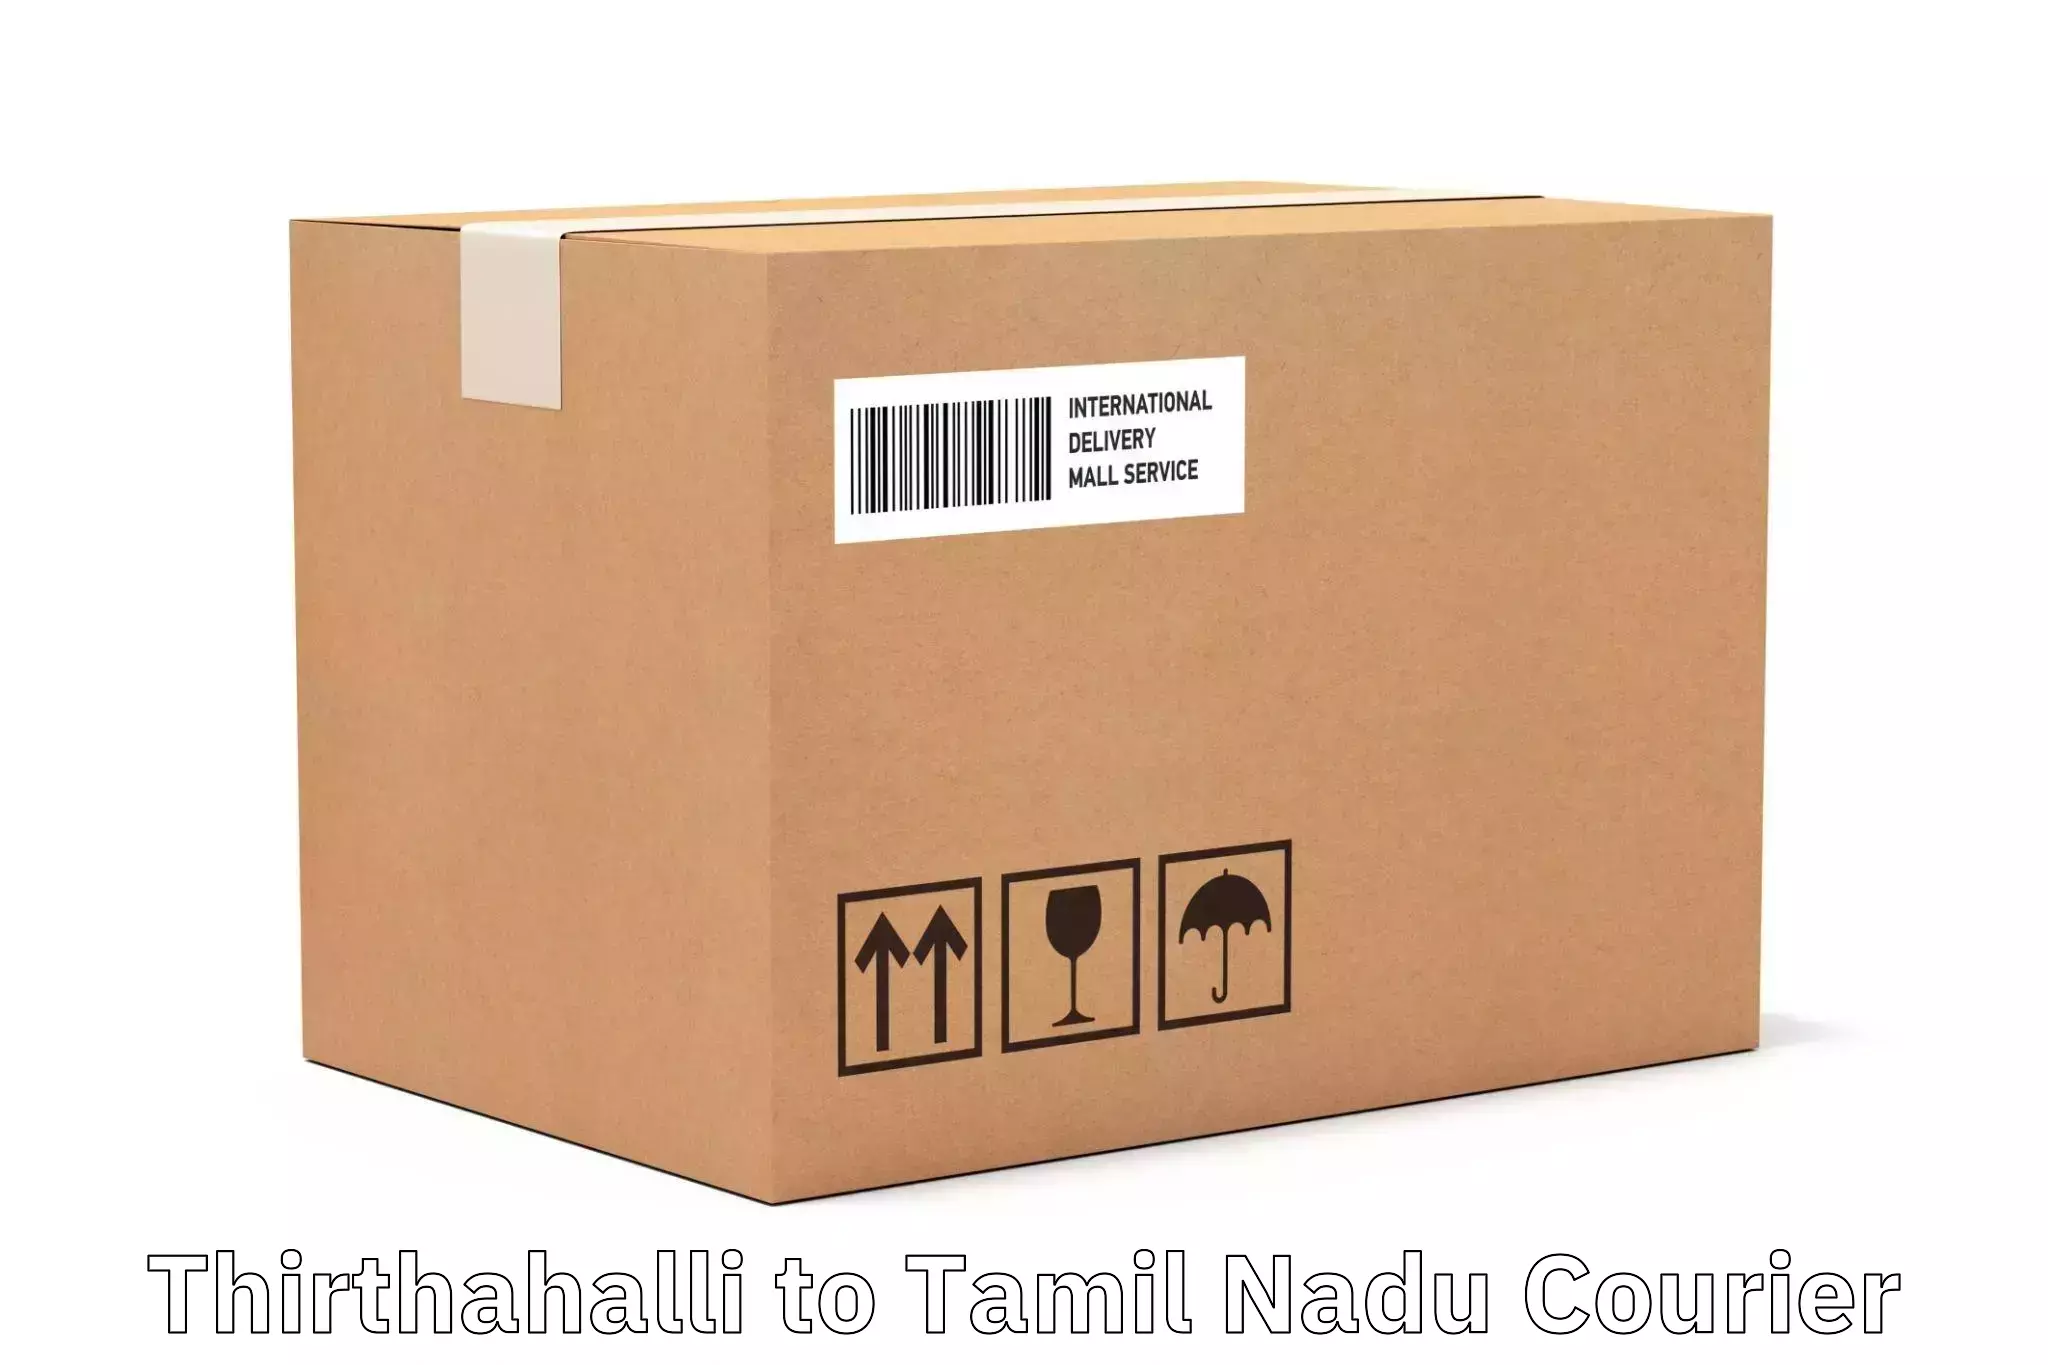 Optimized shipping services Thirthahalli to Nilakottai